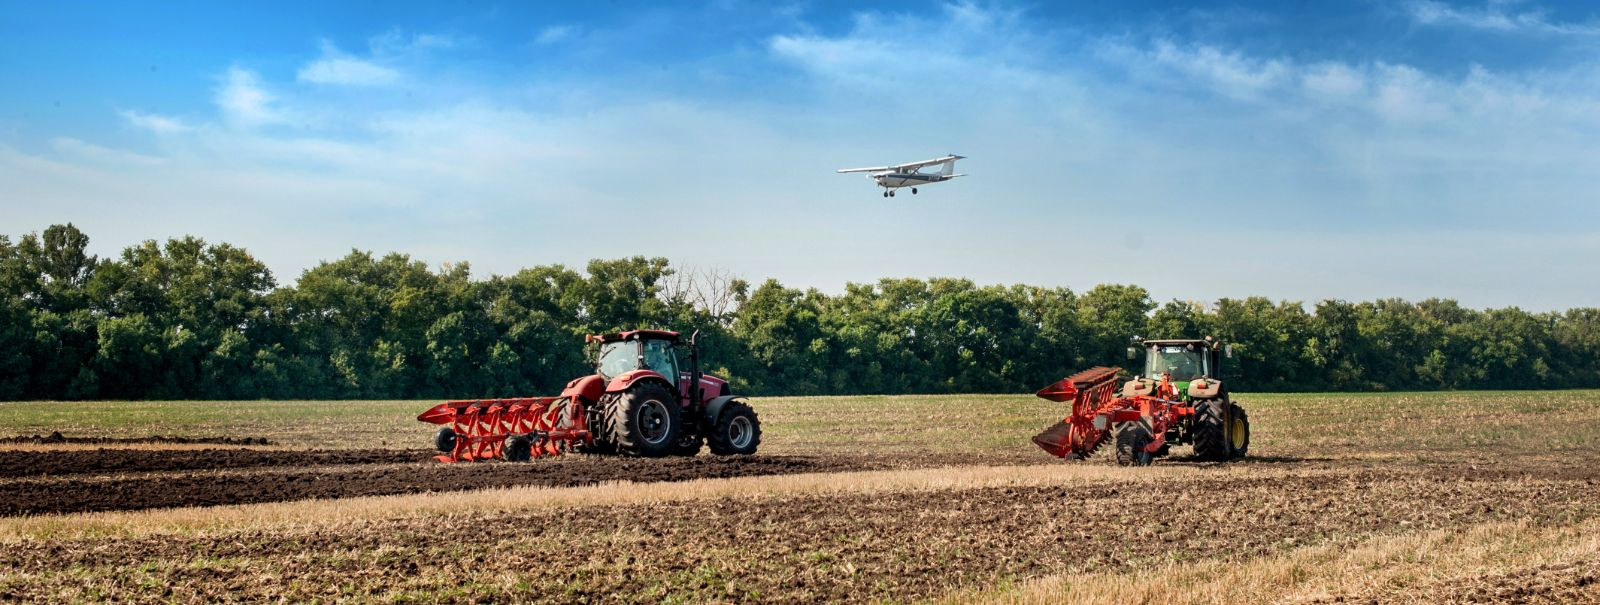 Kuna põllumajandussektor areneb, on täiustatud masinate kasutamine muutunud talu tootlikkuse tõstmise nurgakiviks. FARMEST TRADING OÜ mõistab tipptehnoloogia in